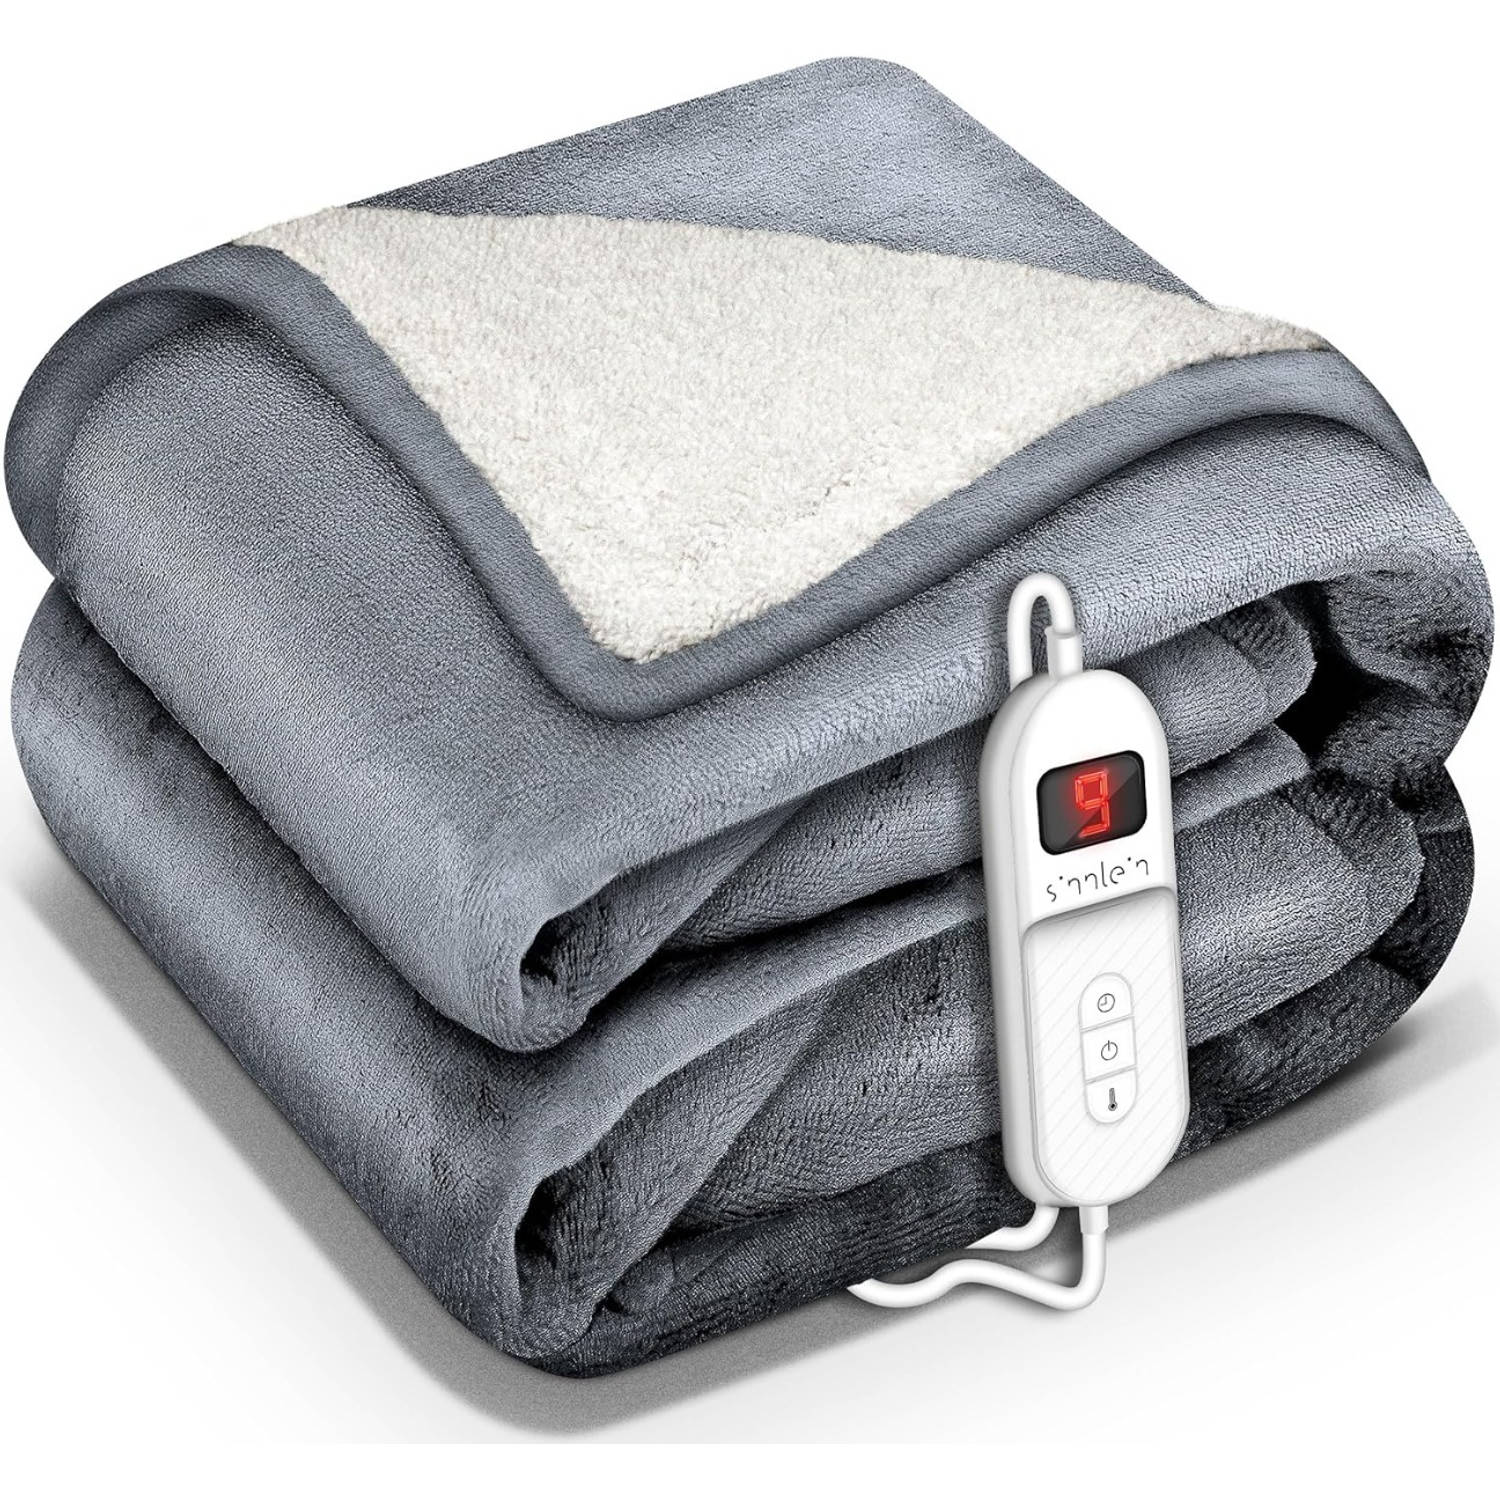 Sinnlein- Elektrische deken met automatische uitschakeling, lichtgrijs, 180x130 cm, warmtedeken met 